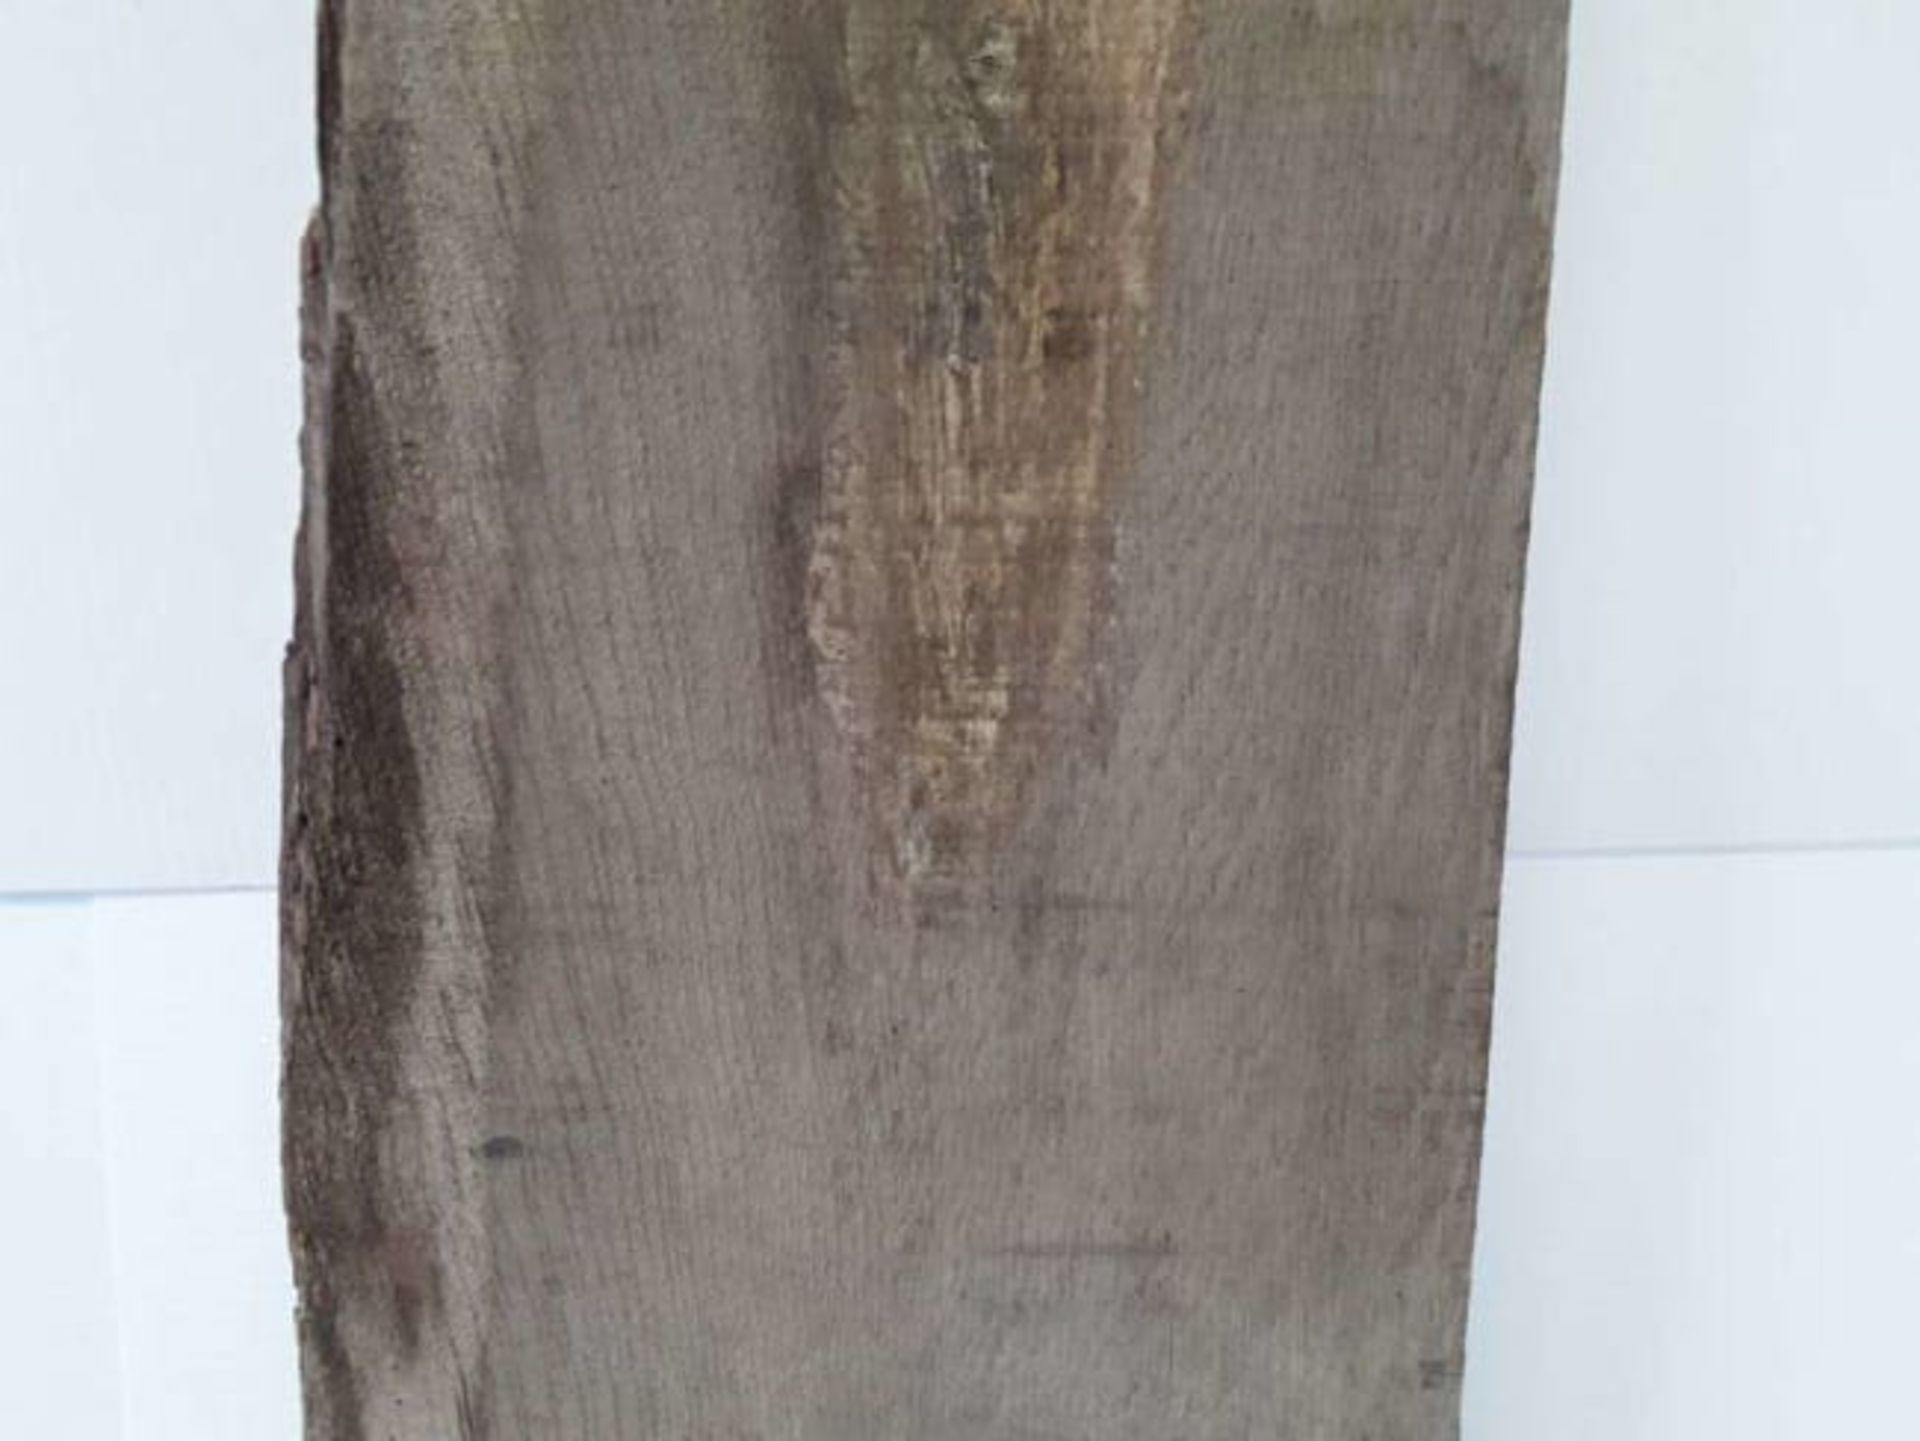 1 x Hardwood Air Dried Sawn English Oak Board / Slab Offcut - Image 3 of 3